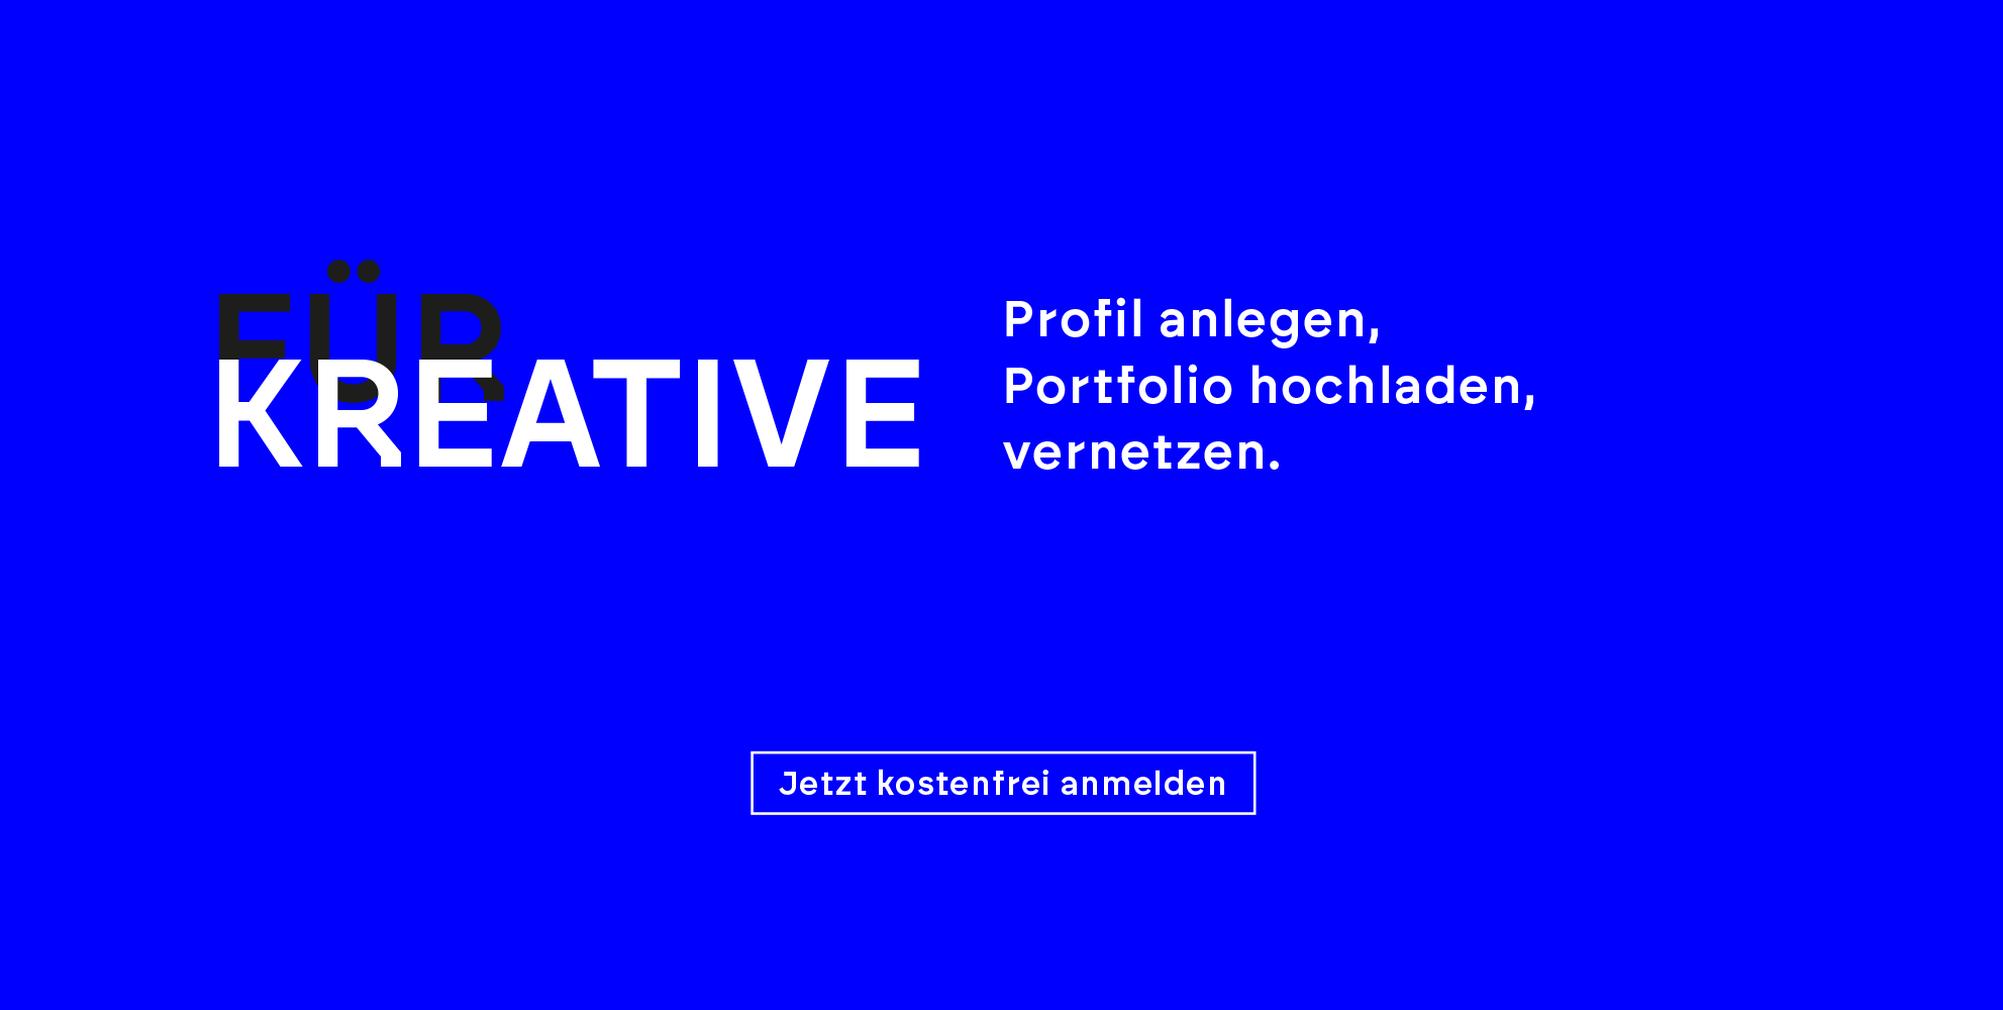 Kreatives Brandenburg für Kreative. Profil anlegen, Portfolio hochladen, vernetzen.